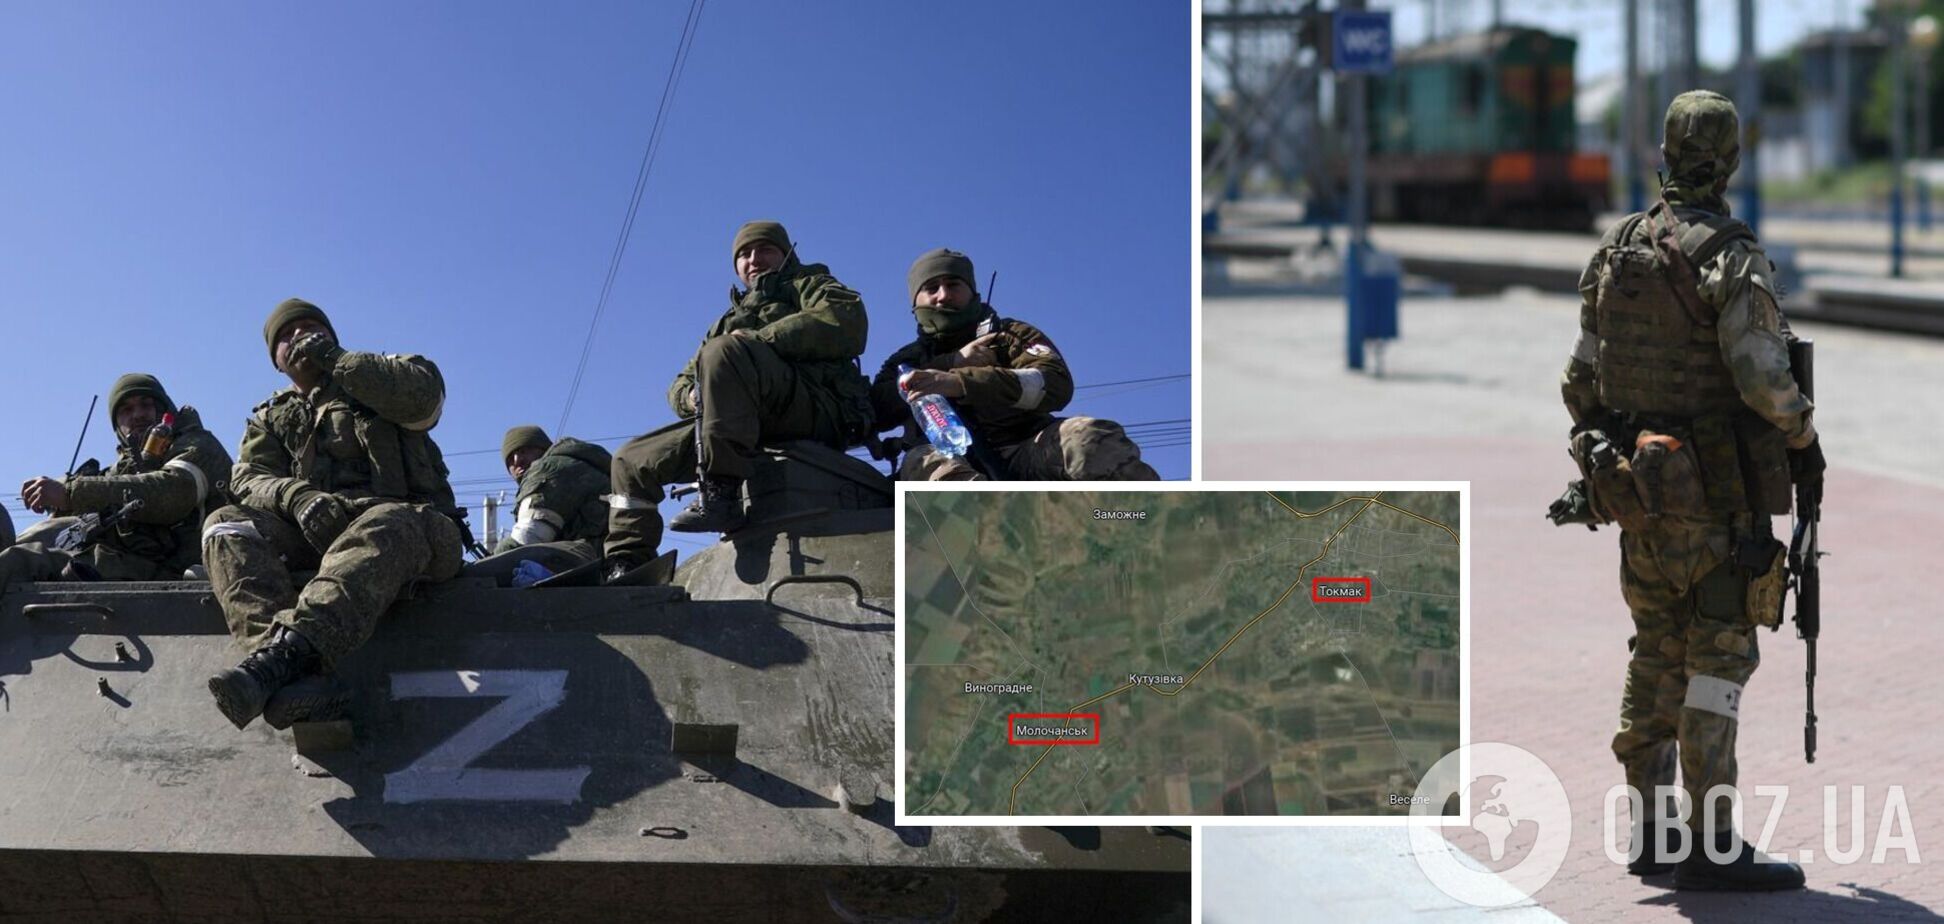 Окупанти переміщують сили з Токмака і Молочанська на Запоріжжі: ЗМІ пояснили, що відбувається. Карта